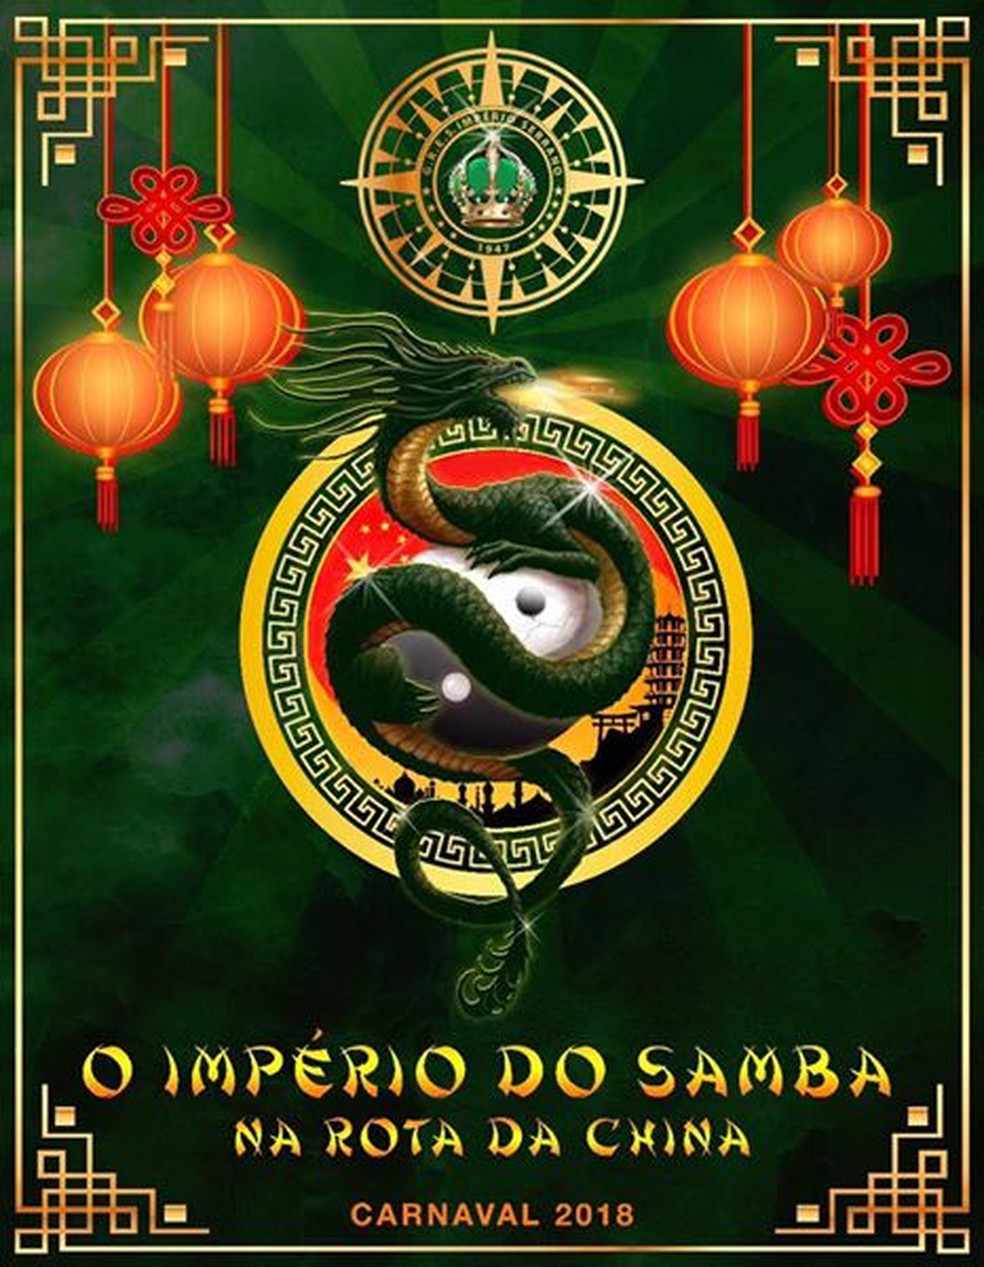 Logo da Império Serrano para o Carnaval 2018 (Foto: Império Serrano/Divulgação)